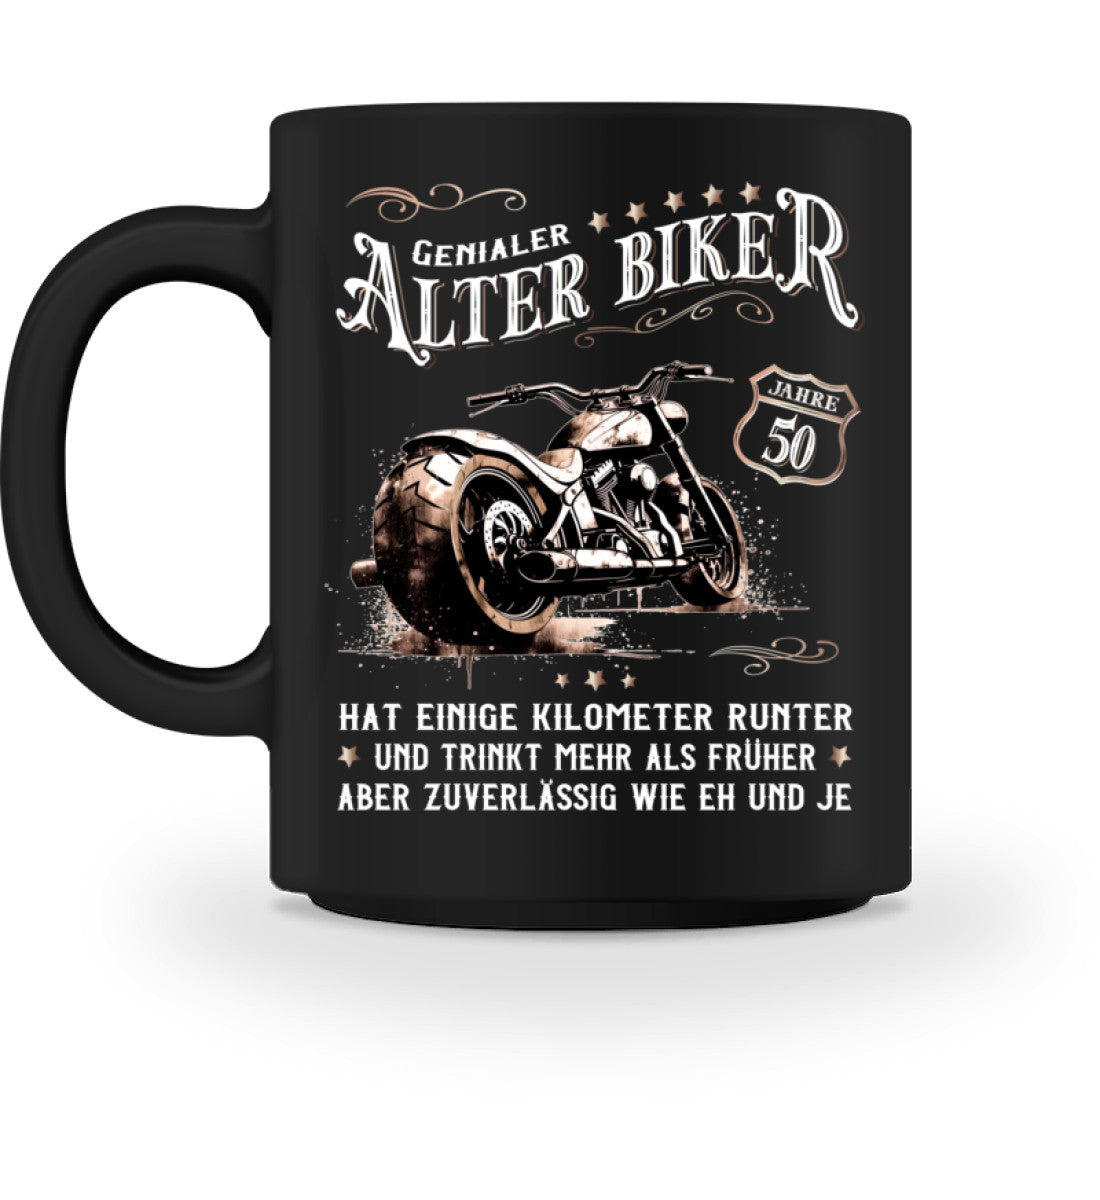 Eine Biker  Geburtstags-Tasse für Motorradfahrer, von Wingbikers, mit dem beidseitigen Aufdruck, Alter Biker - 50 Jahre - Einige Kilometer runter, trinkt mehr - aber zuverlässig wie eh und je, in schwarz.